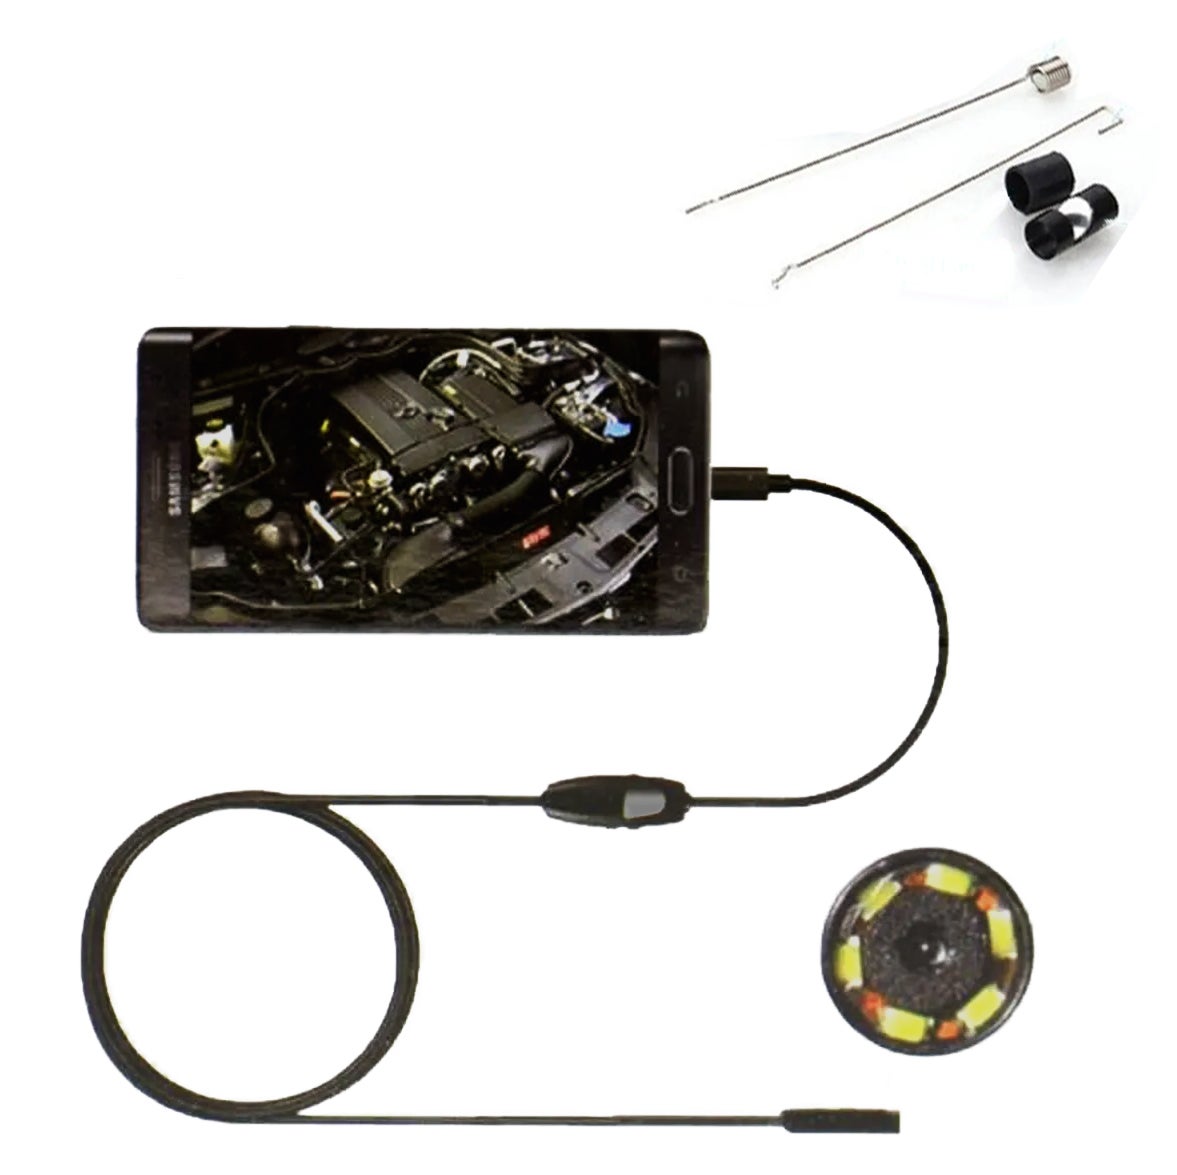 Étanche HD 2M 7mm Endoscope Lens Câble Rigide Mini USB Inspection Caméra Tube de Serpent avec 6 LED Endoscopie pour Téléphone PC Noir 